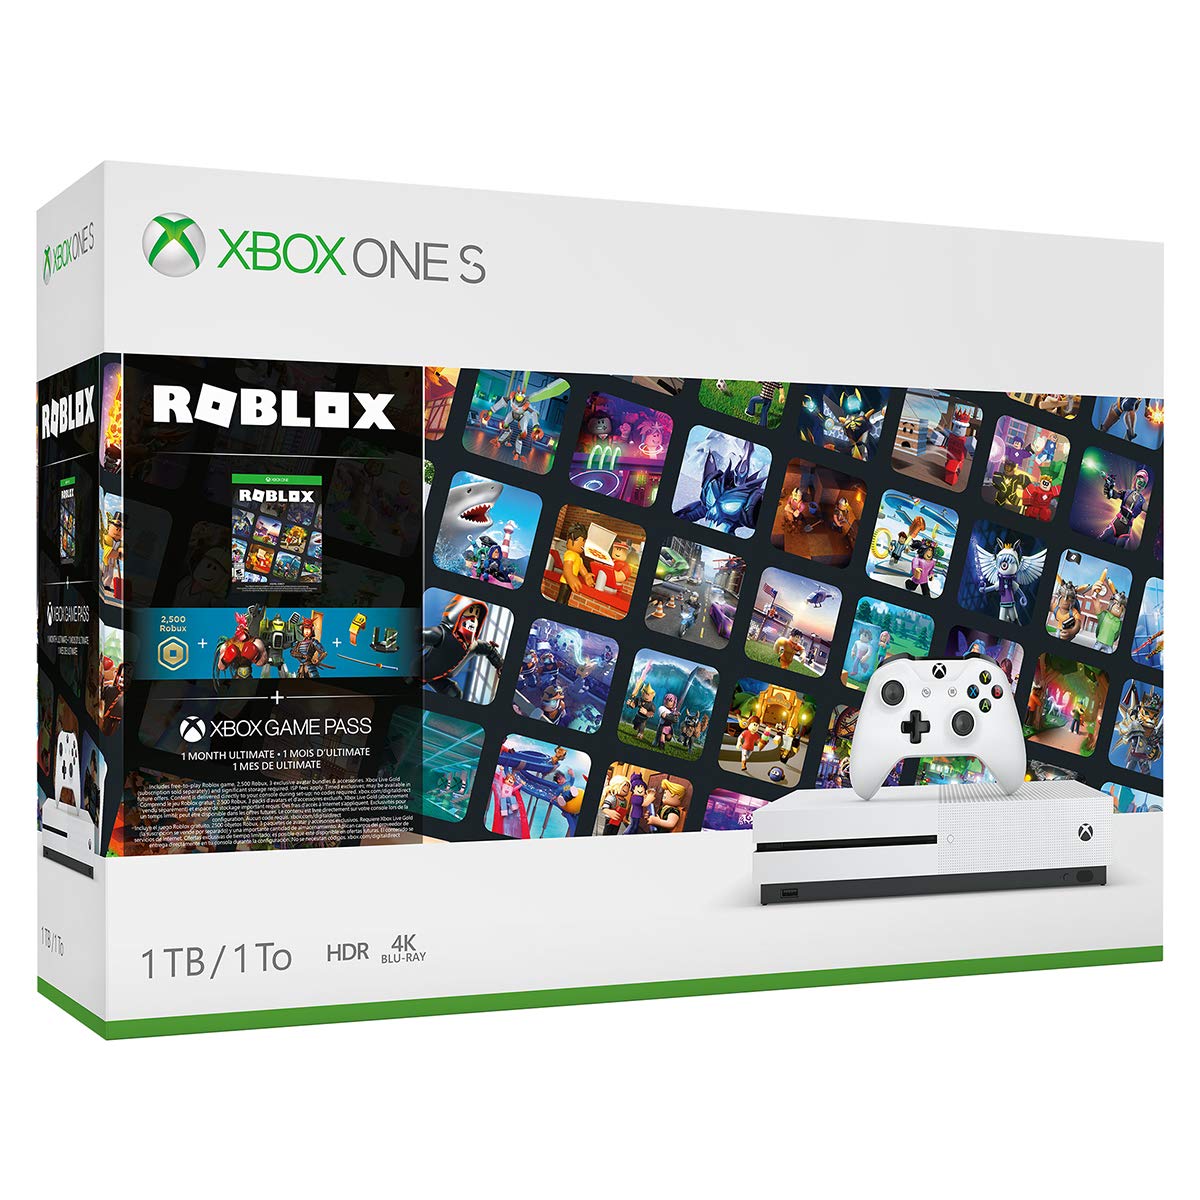 Cùng trải nghiệm game Roblox thật hoành tráng với gói Roblox bundle cho Xbox One S. Microsoft Xbox One S sẽ mang đến cho bạn những trò chơi thú vị và đầy kịch tính trên nền tảng game hàng đầu.